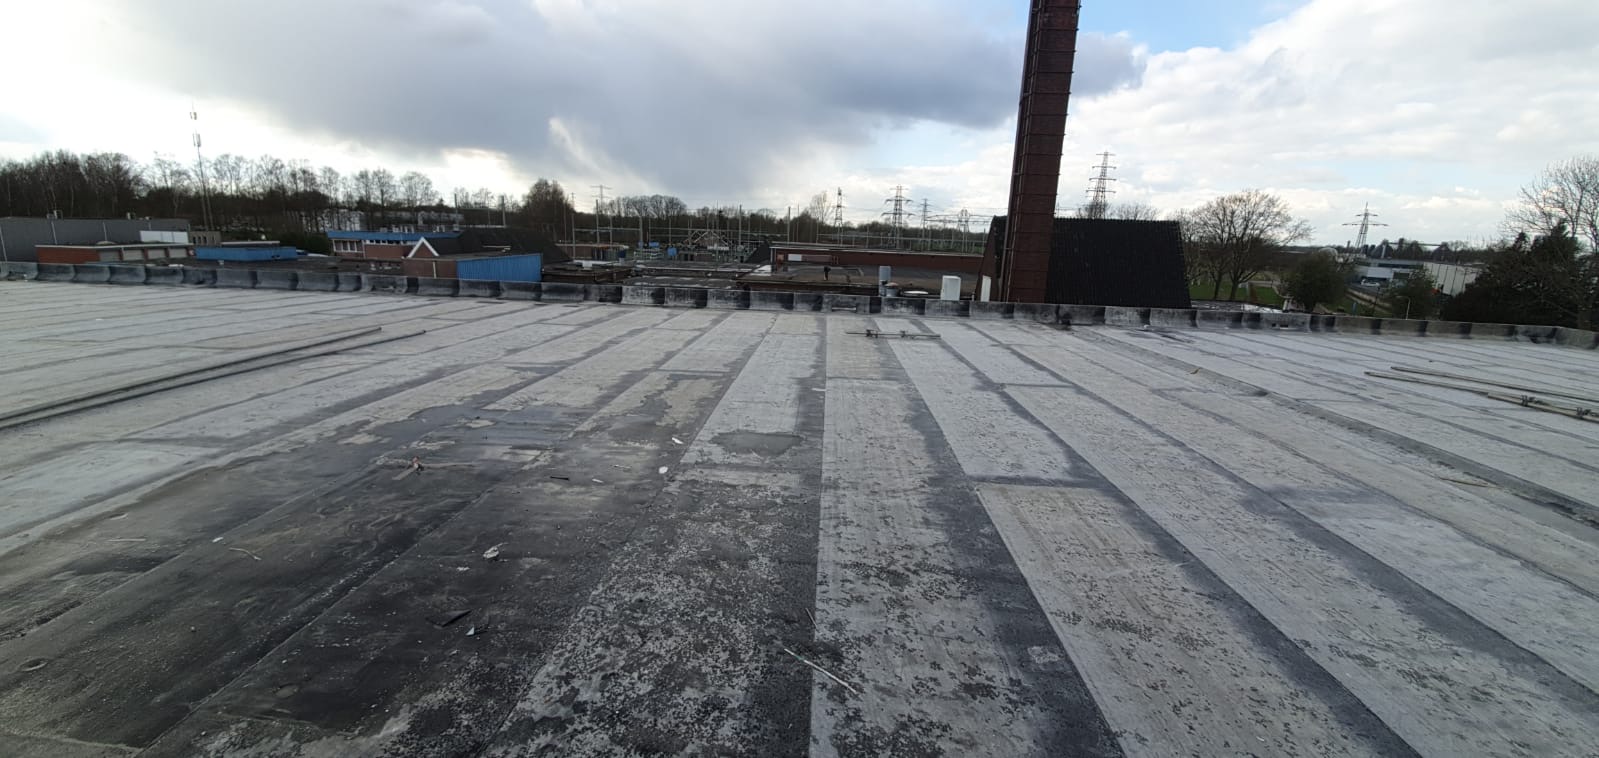 Veldscholten Dakbekking gereed met dak nieuwe bedrijfshal VST BV HENGELO 1